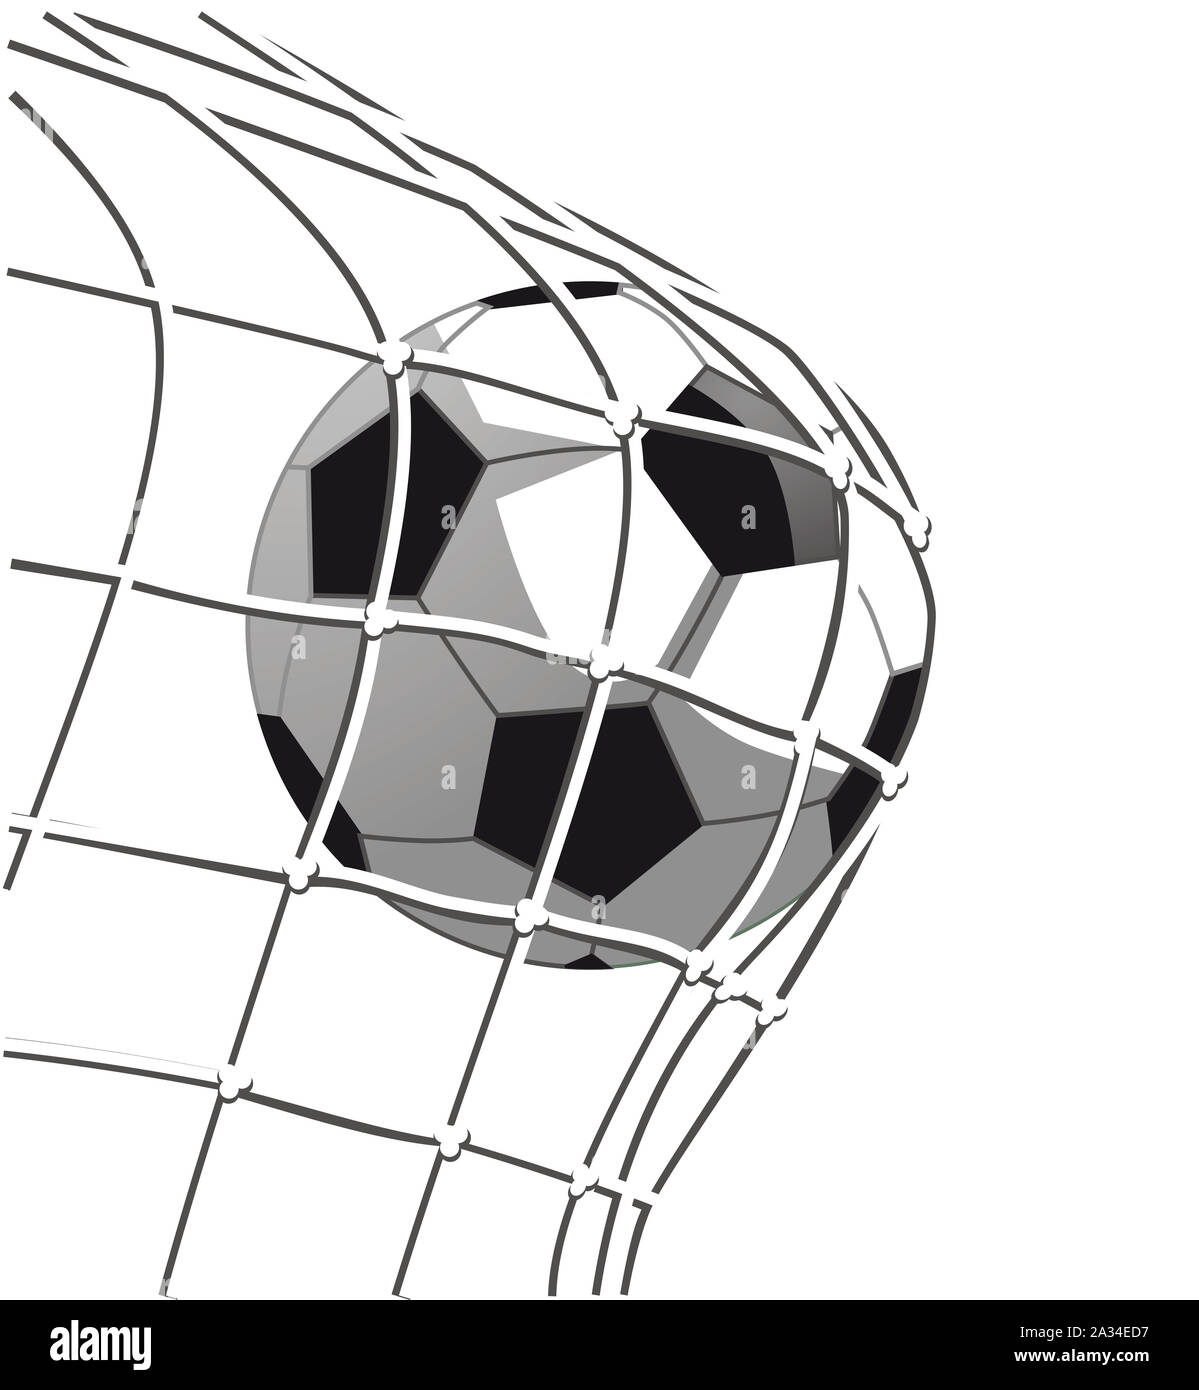 Fussball torschuss, Ziel auf dem Fußballfeld, Abbildung Stockfoto